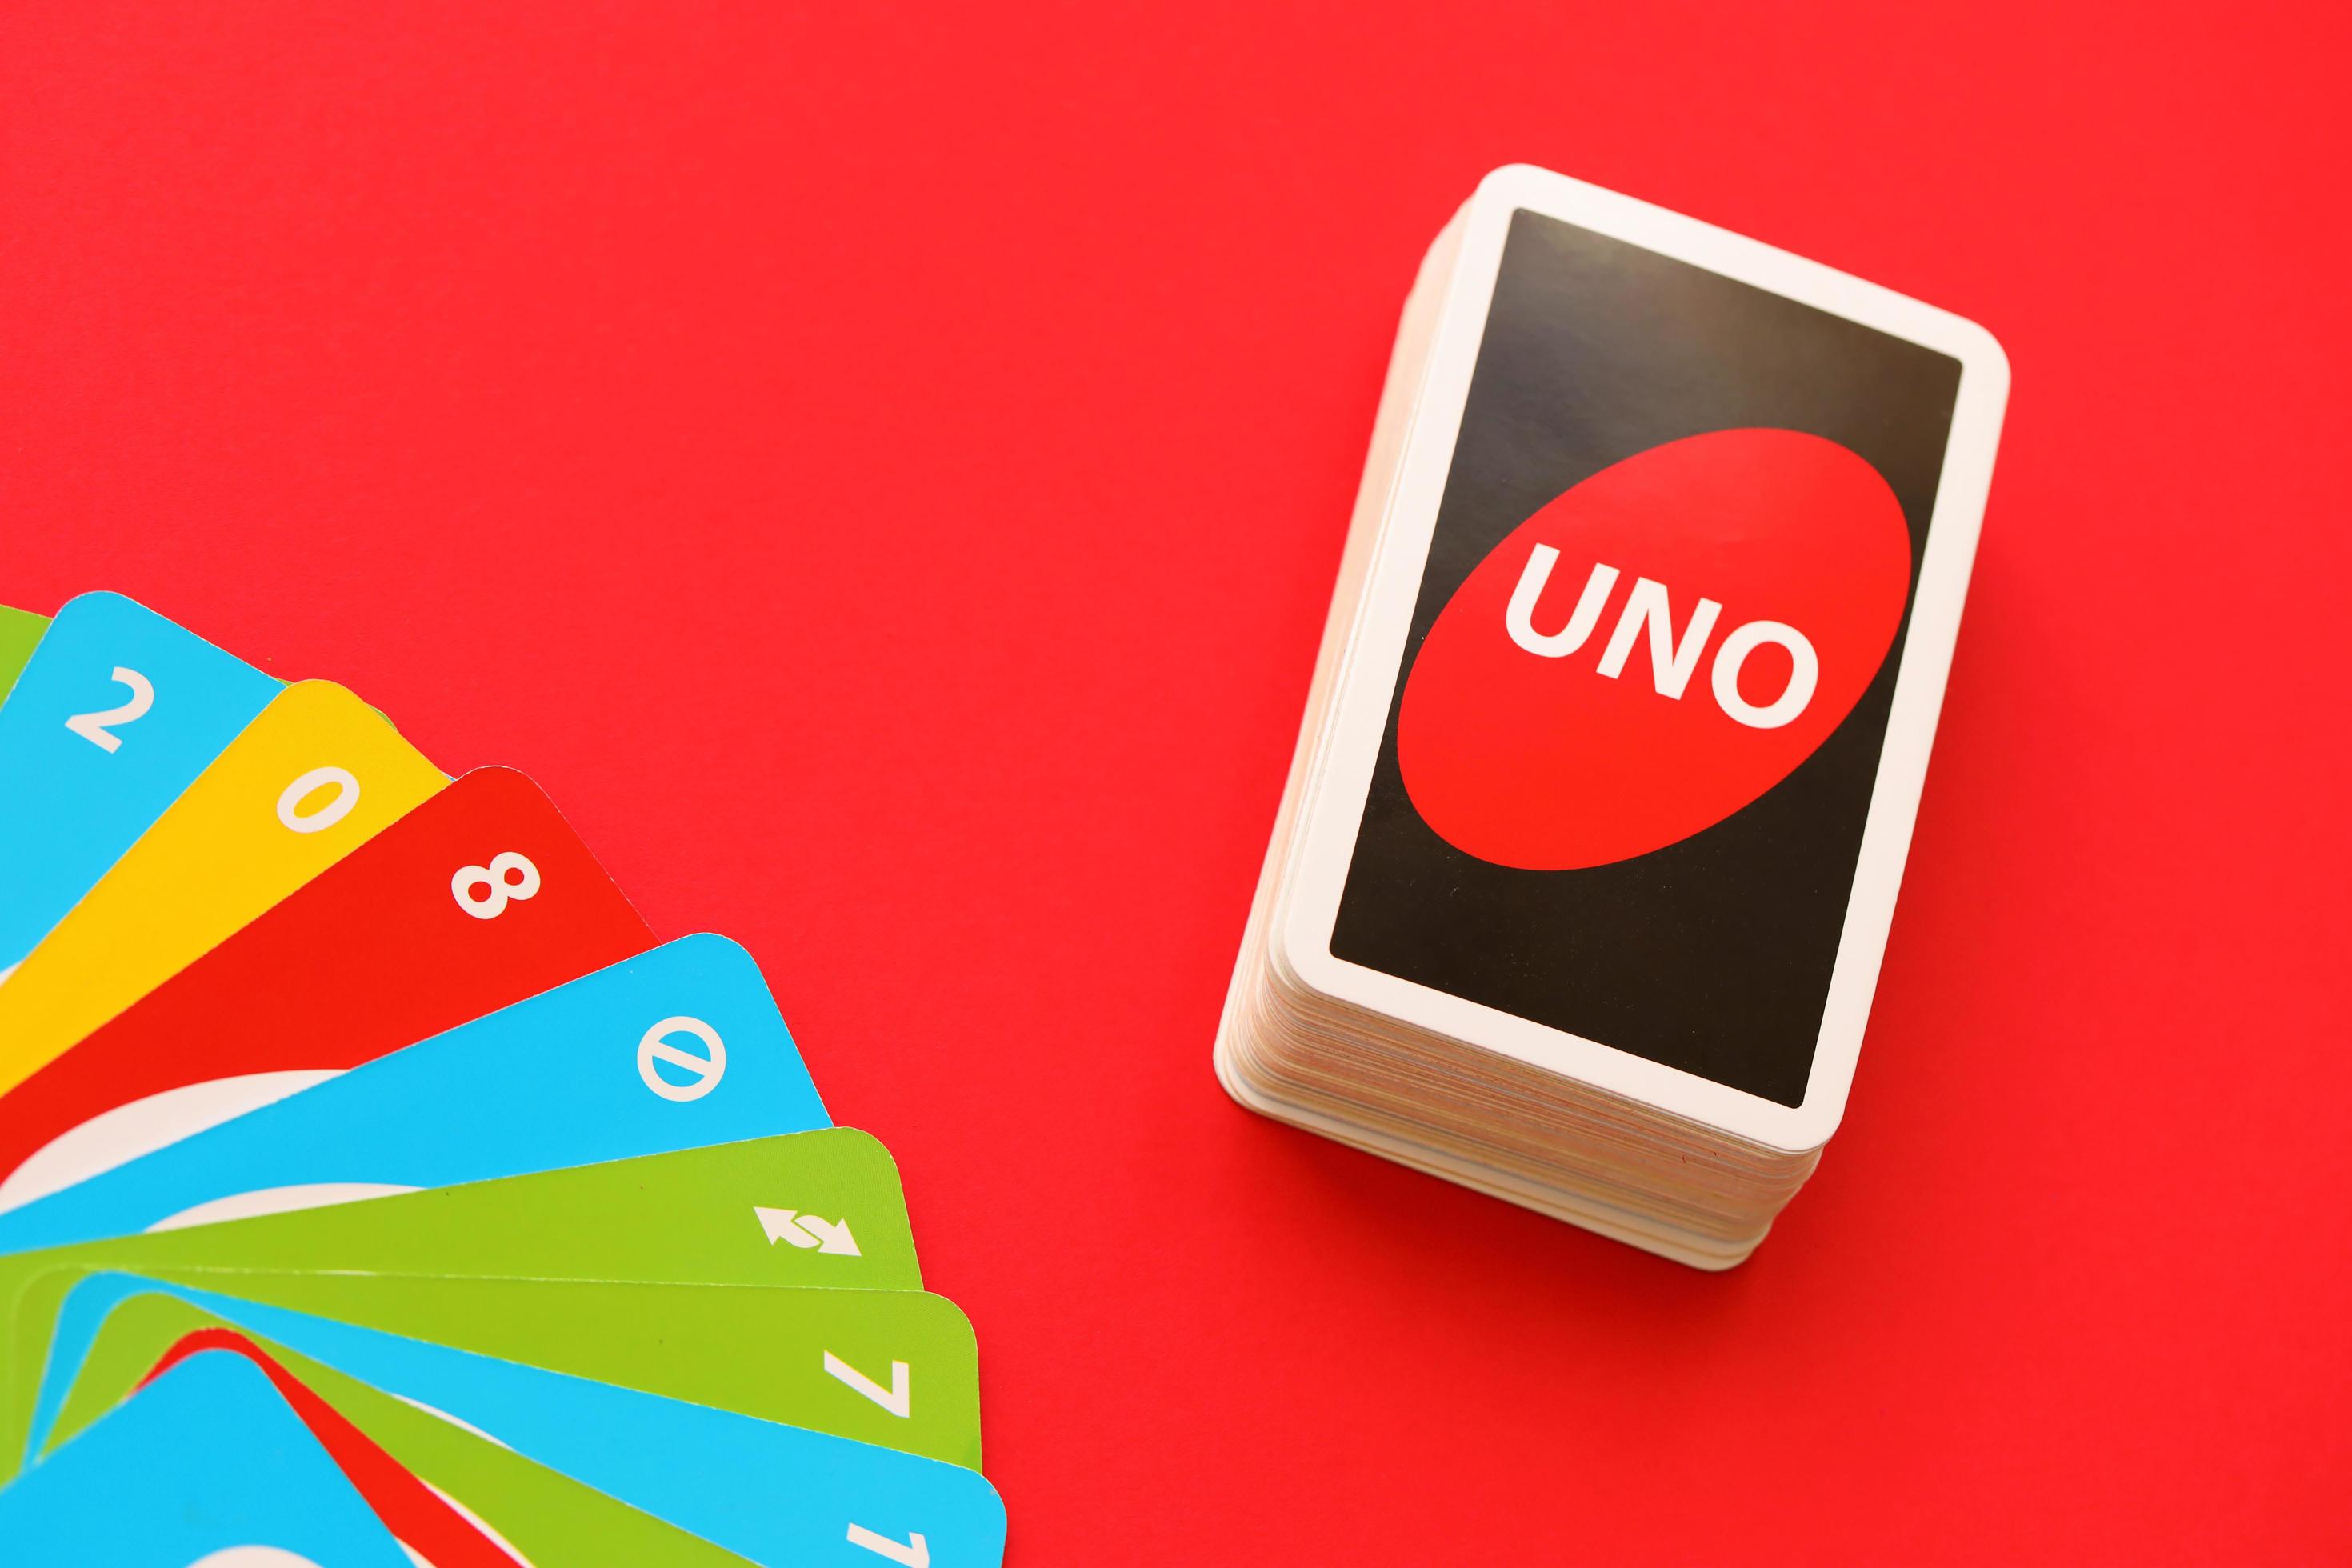 Một bộ bài UNO game cards được thiết kế vô cùng đầy màu sắc với những họa tiết thú vị chắc chắn sẽ làm bạn thích thú. Bạn sẽ không chỉ có những giờ phút giải trí mà còn tận hưởng niềm vui trong từng lá bài.